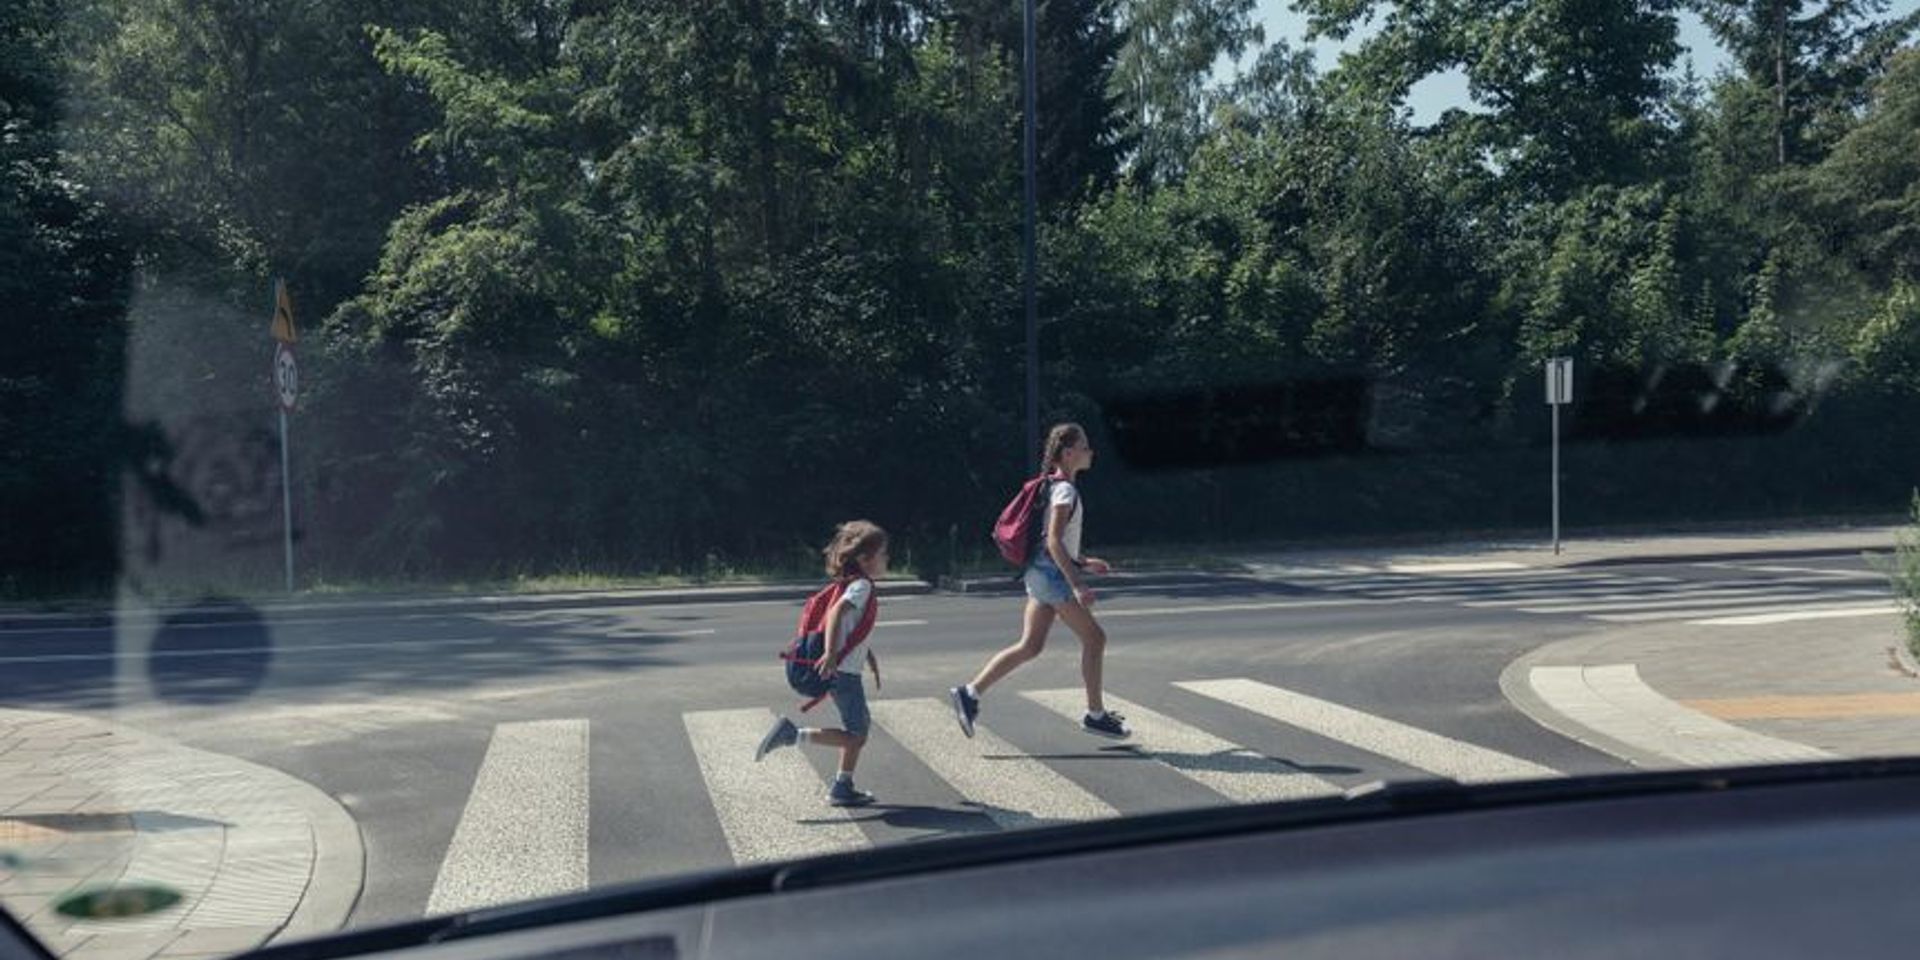 Vigyázzunk a gyerekekre az utakon!